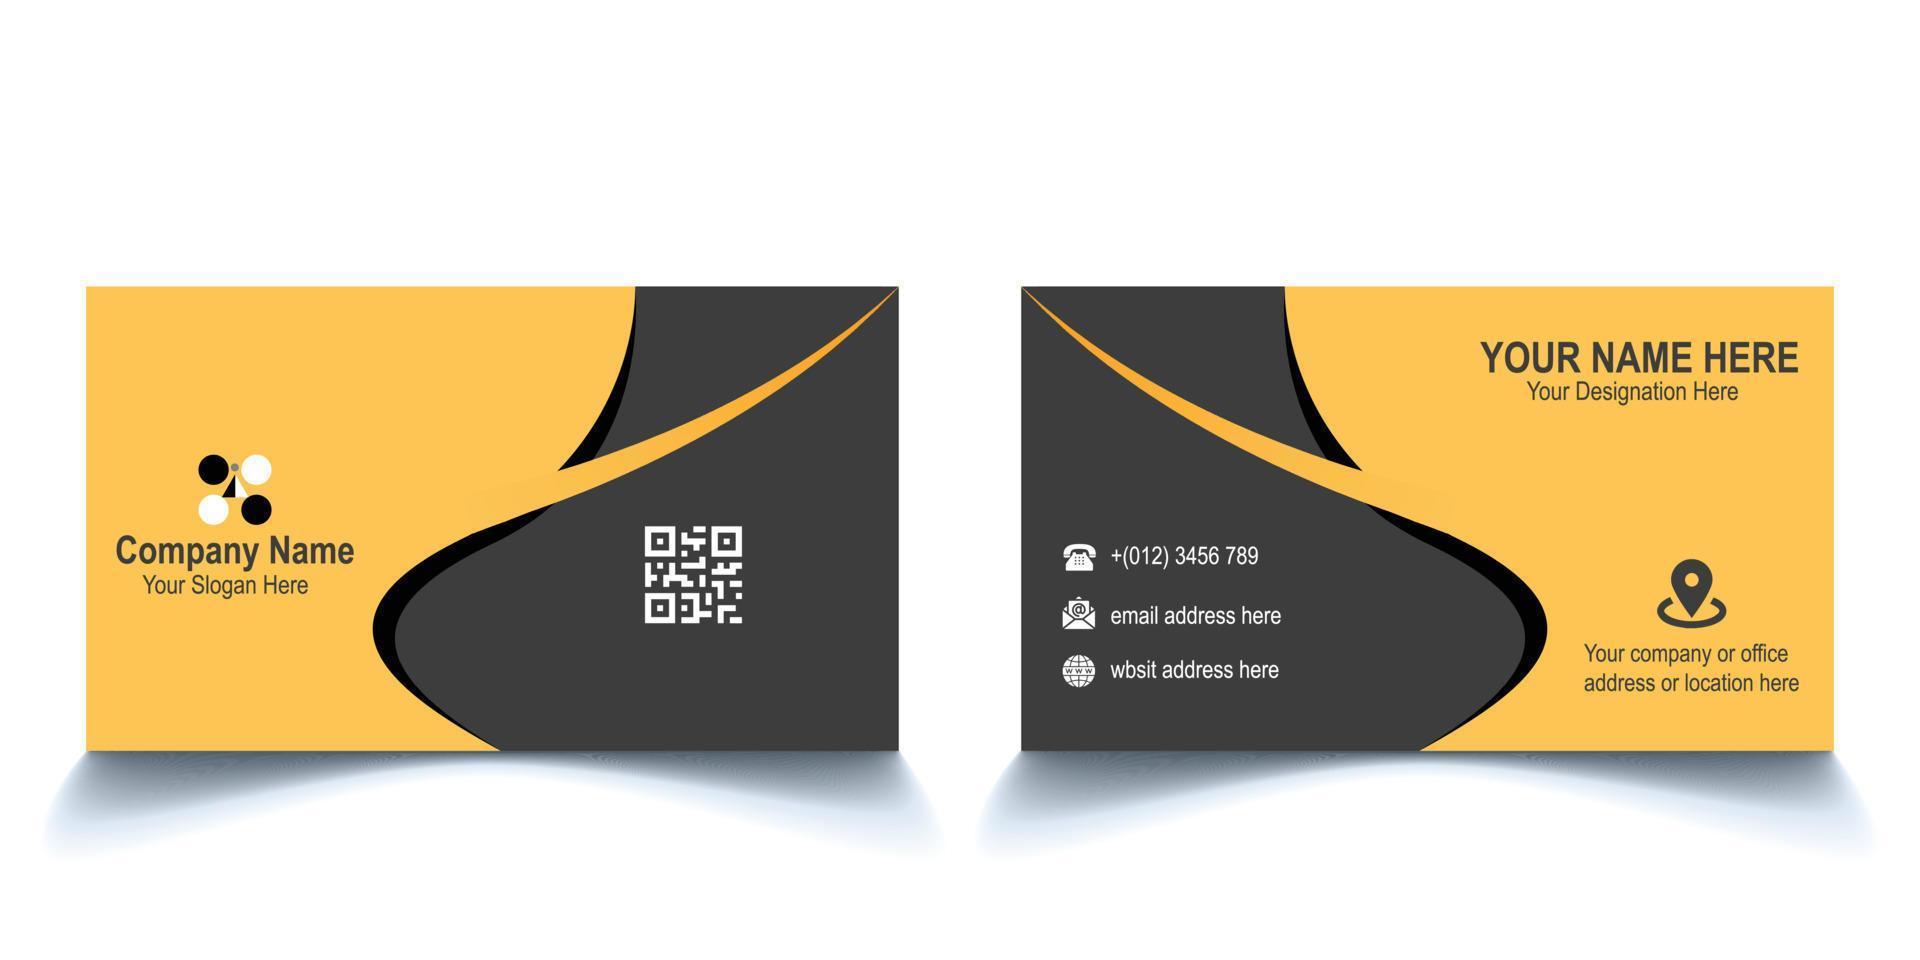 moderno creativo negocio tarjeta diseño modelo. único forma moderno negocio tarjeta diseño. dorado amarillo y profundo gris gratis vector